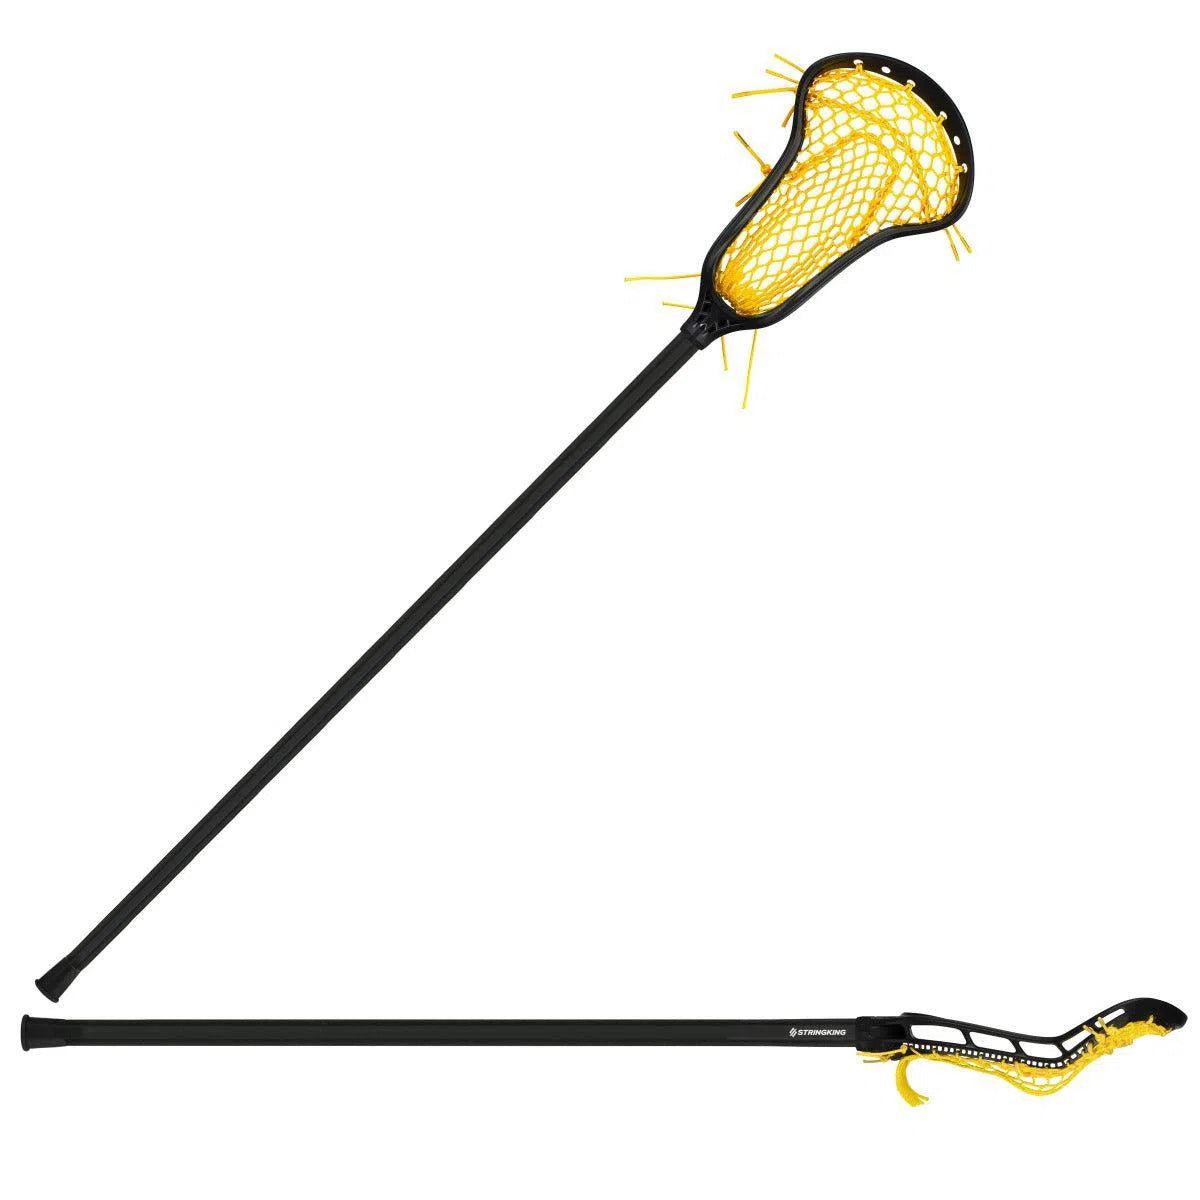 StringKing Complete 2 Pro Midfield Women's Lacrosse Stick